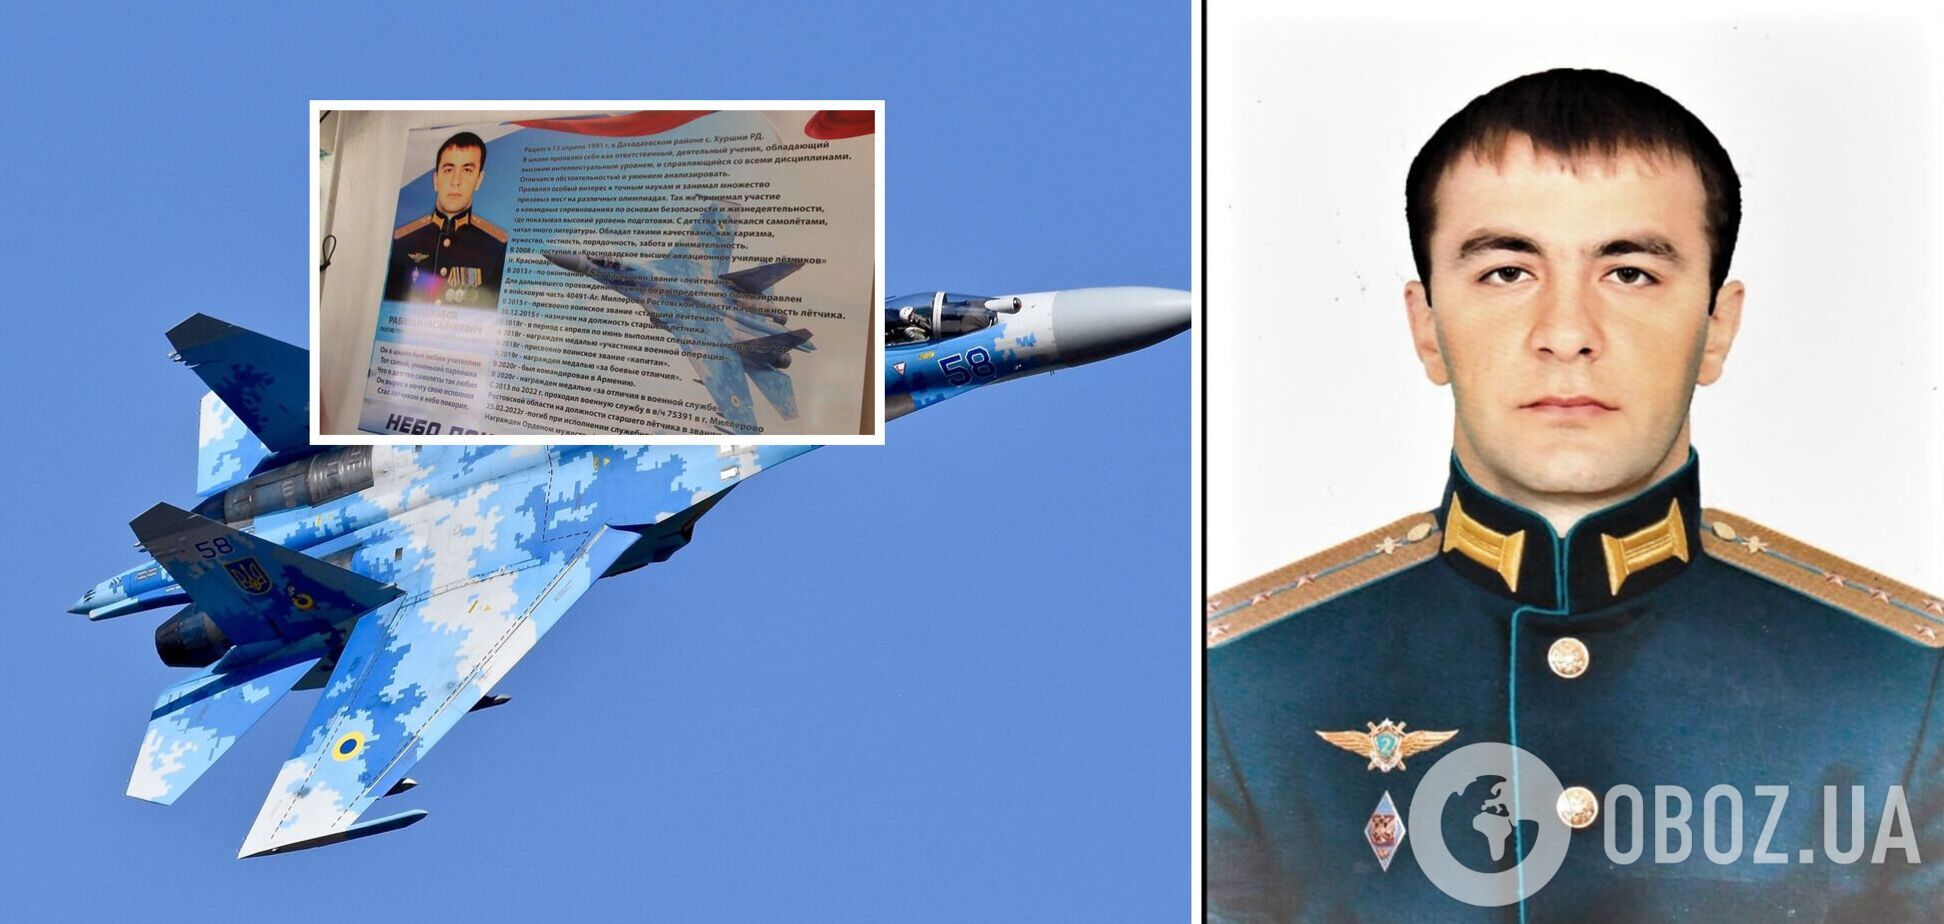 У Росії зганьбилися з некрологом окупанту, прикрасивши його зображенням українського Су-27. Фото